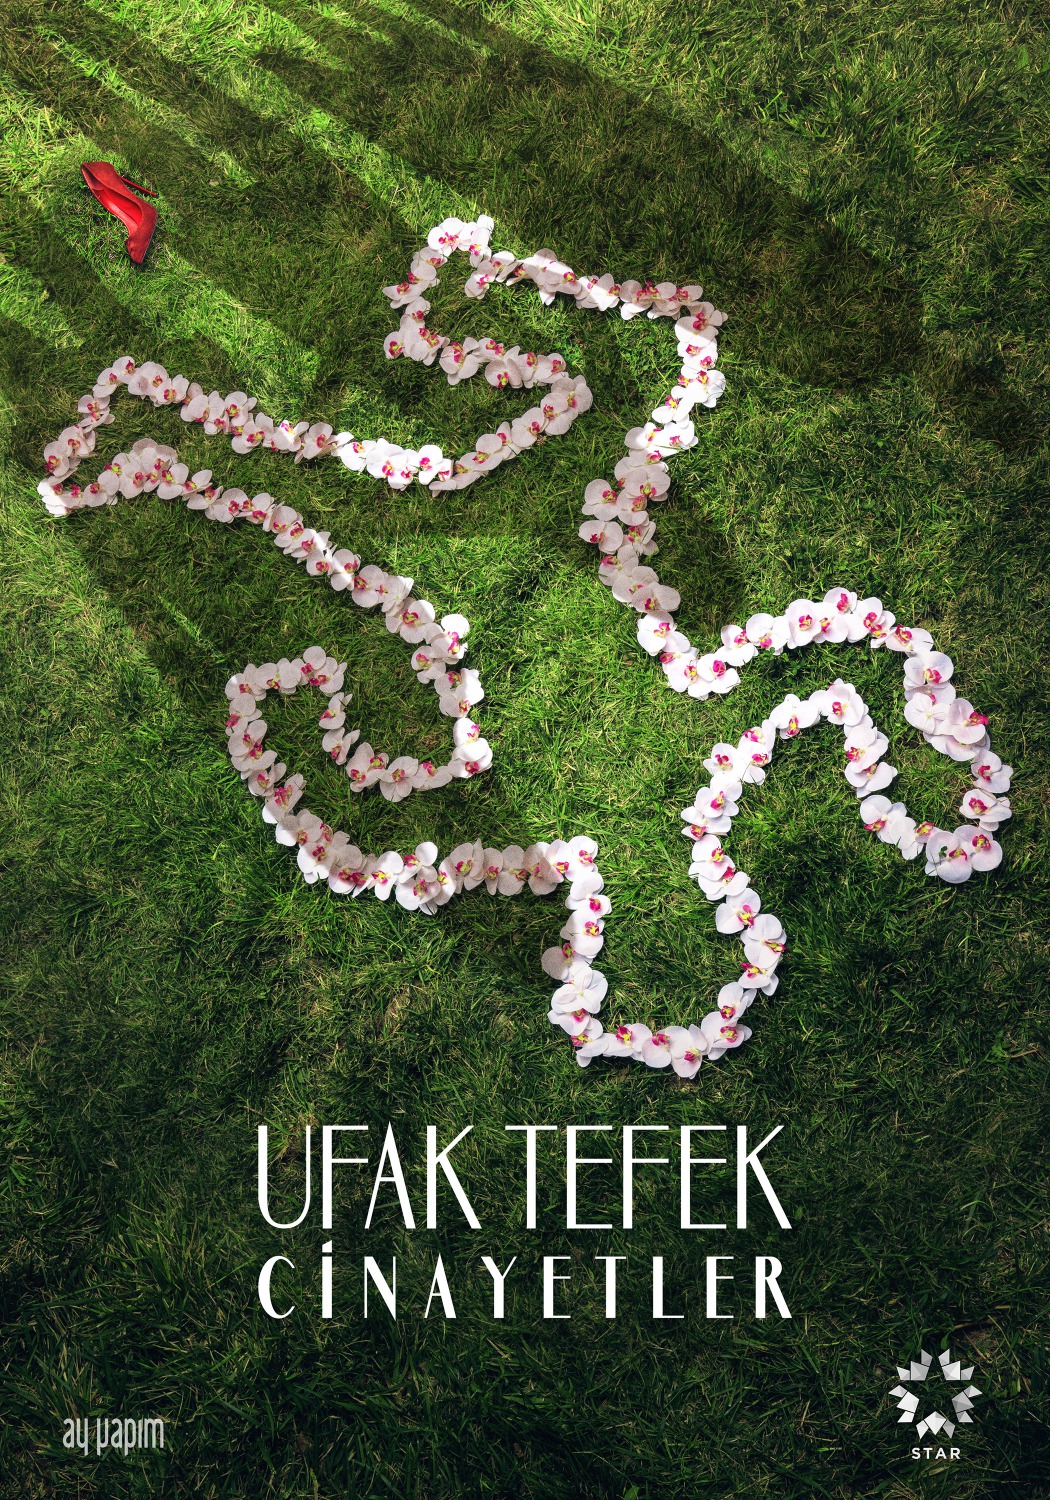 Extra Large TV Poster Image for Ufak Tefek Cinayetler (#2 of 2)